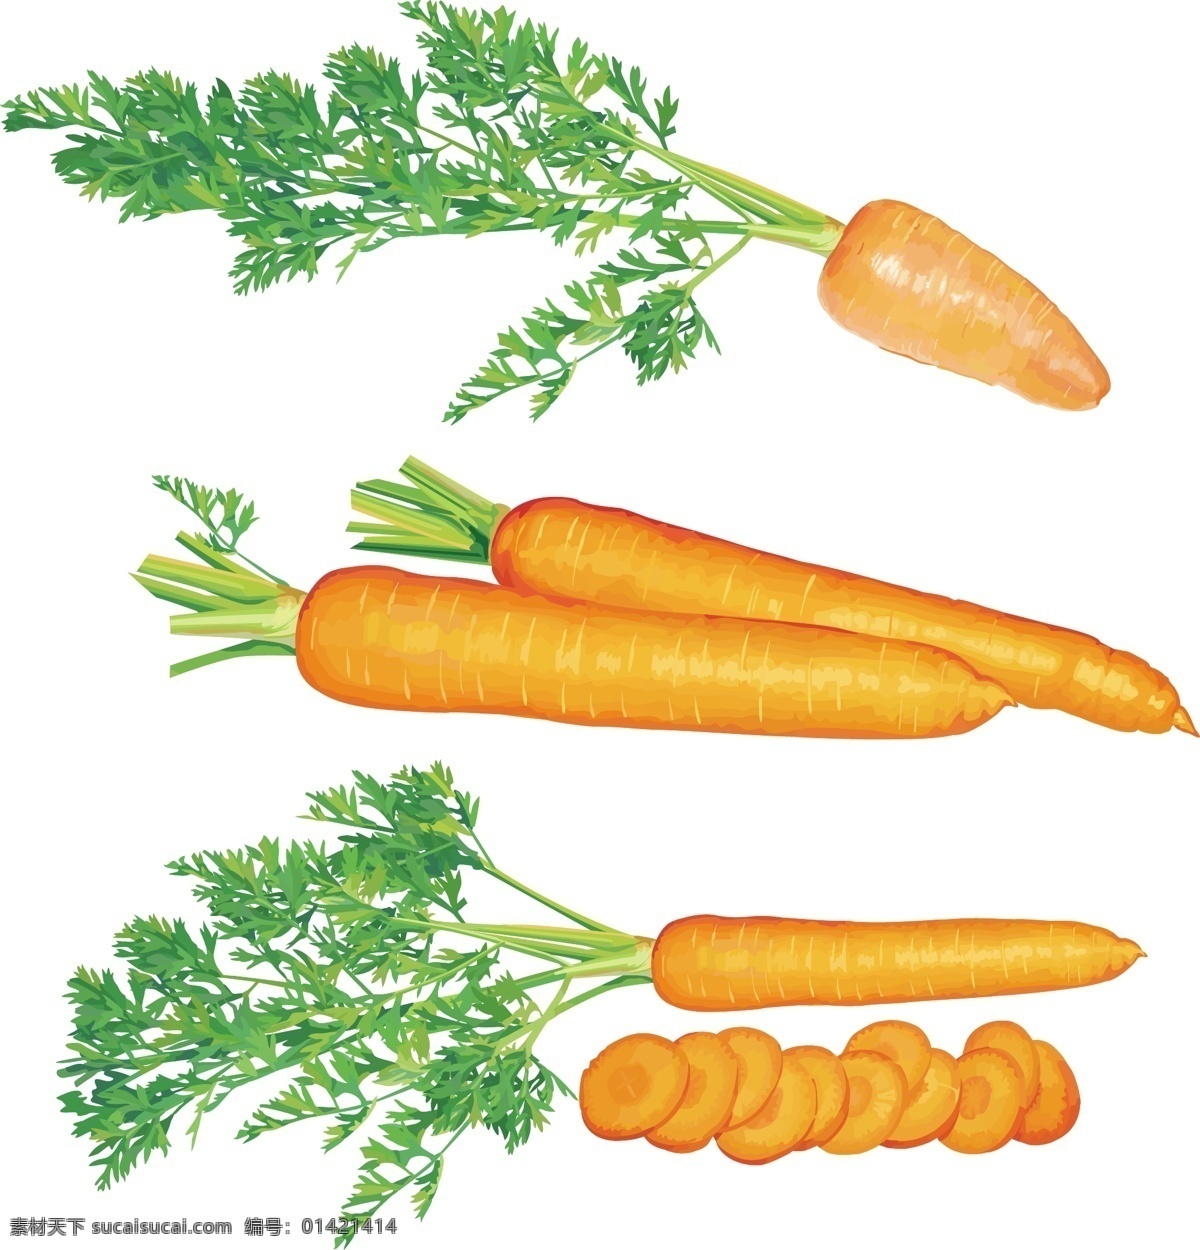 超 写实 胡萝卜 绿叶子 模板 模版 设计稿 蔬菜 素材元素 新鲜 源文件 矢量图